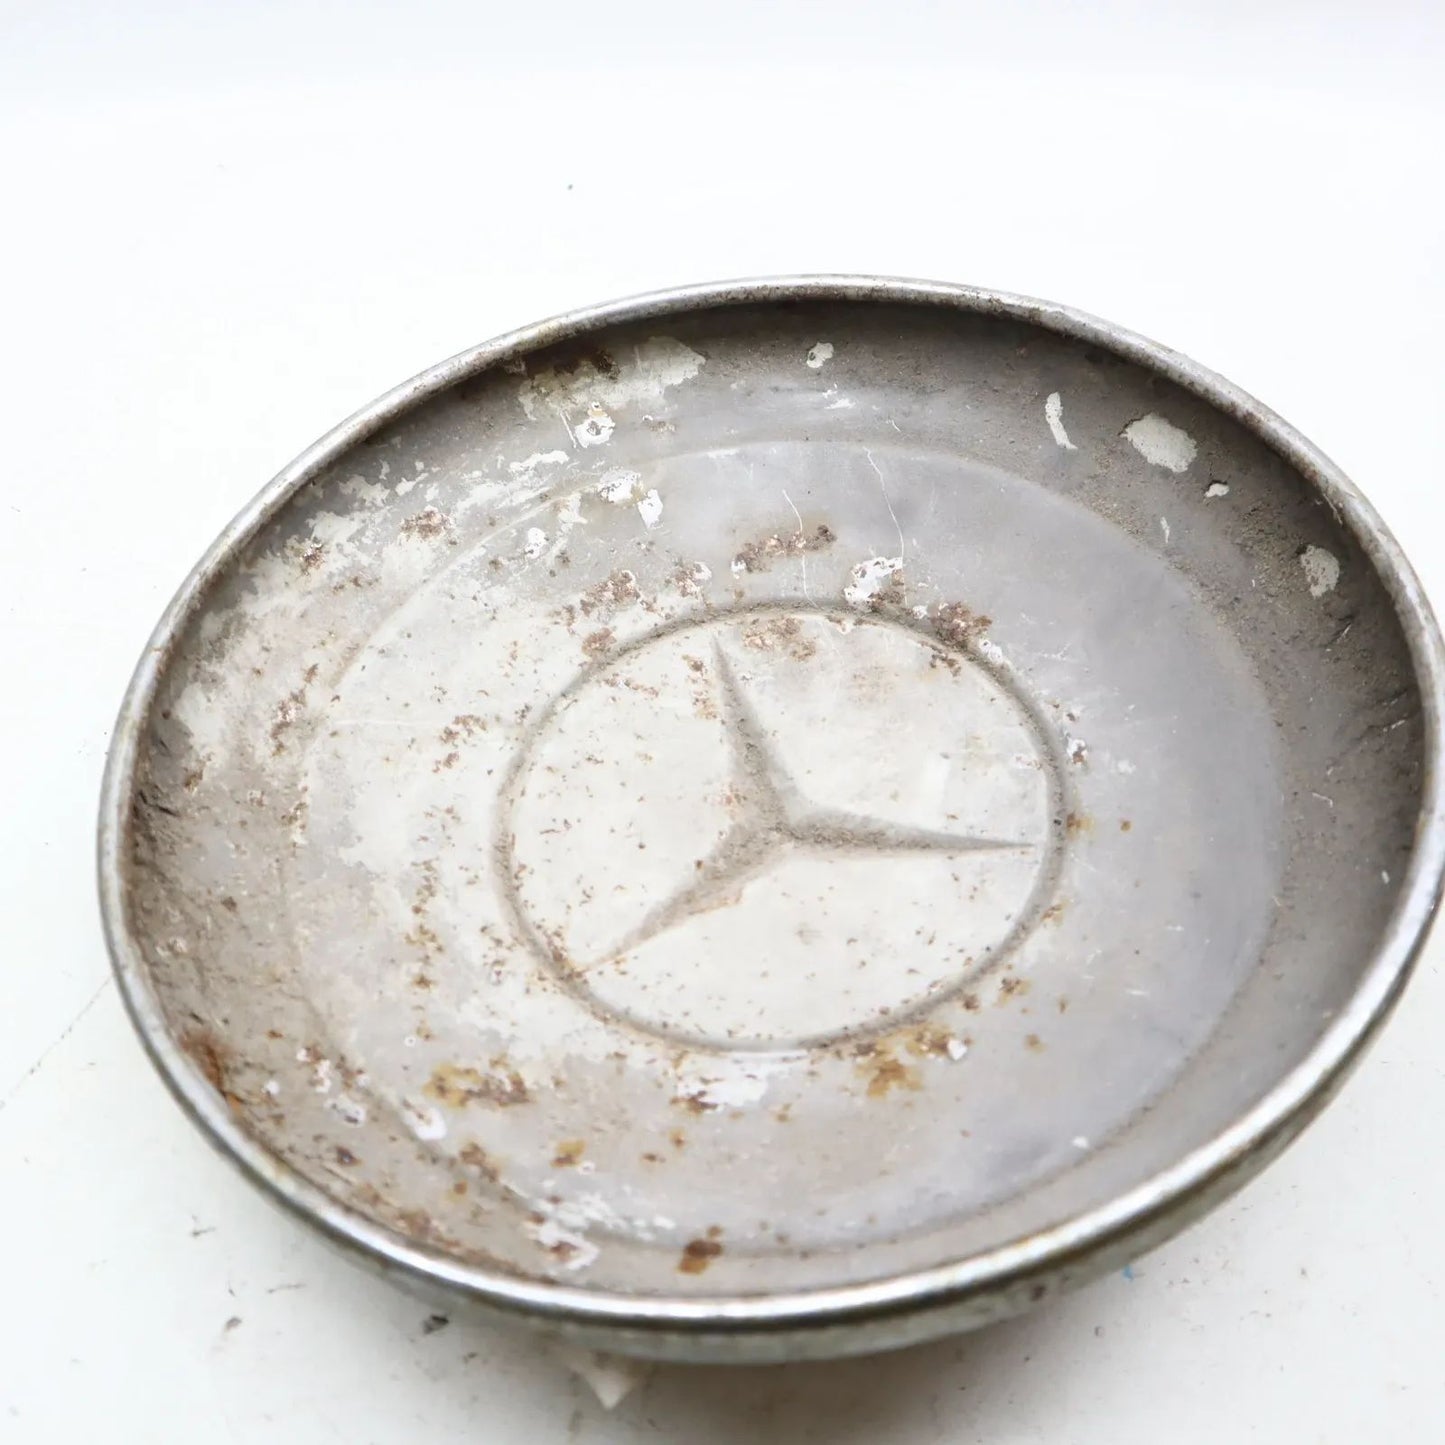 Mercedes Radkappe